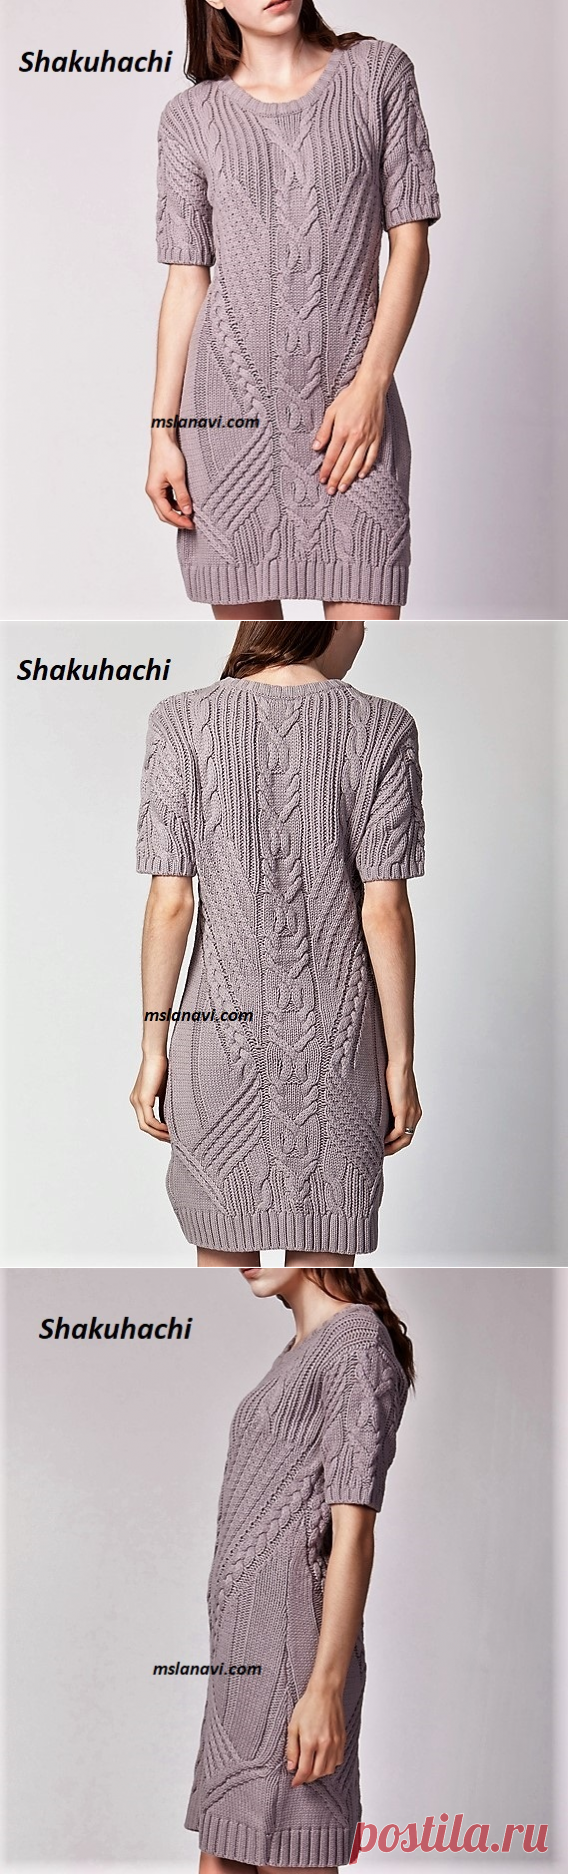 Вязаное платье от Shakuhachi | Вяжем с Лана Ви